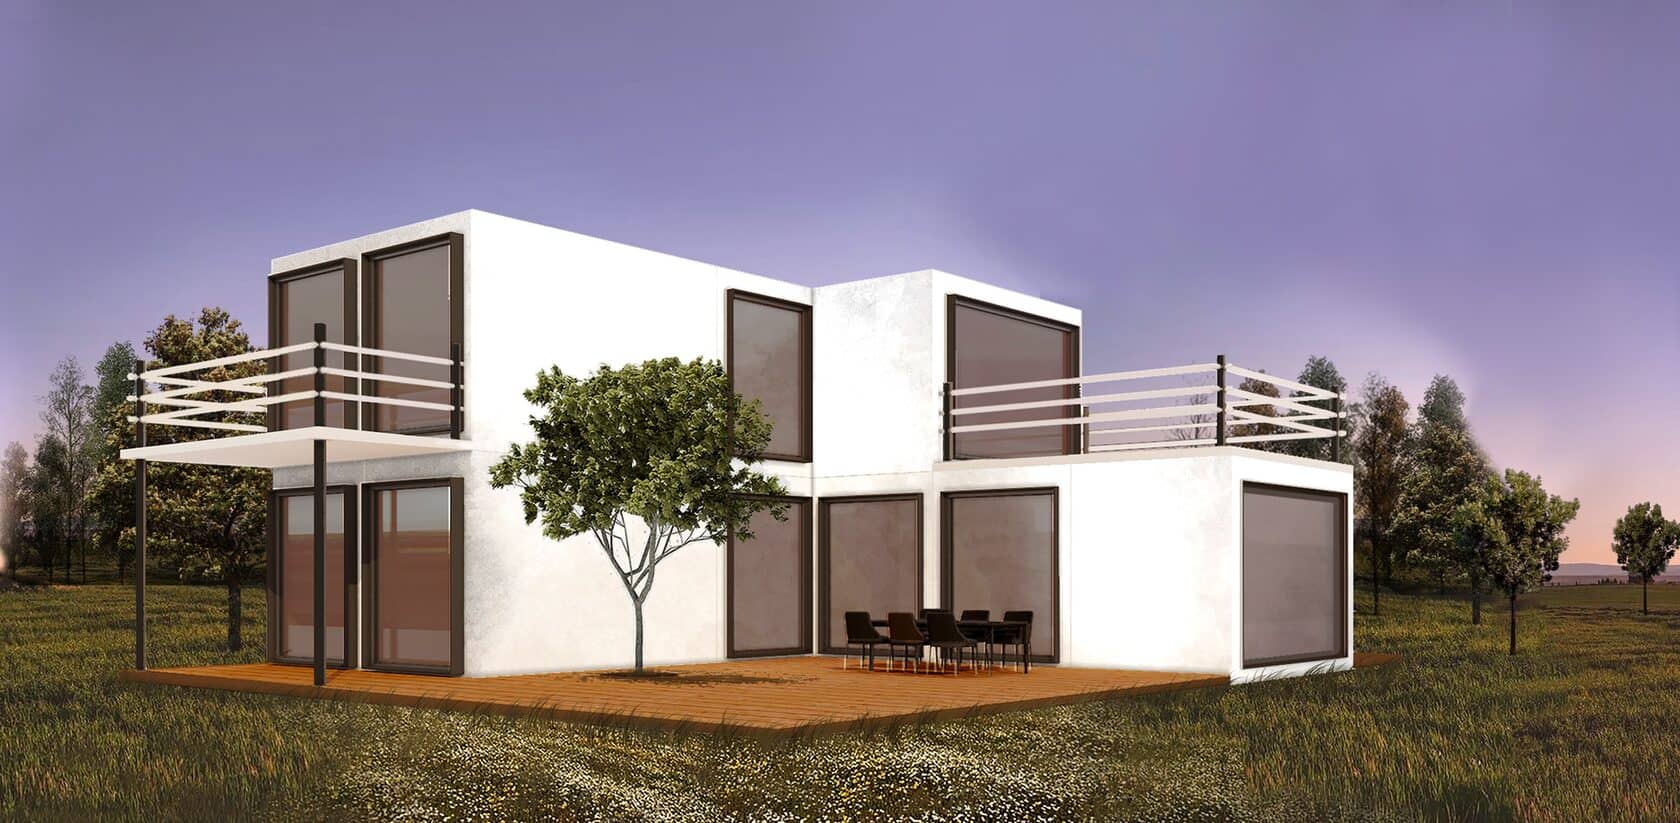 Фасады домов из бетона и дерева | Дом в стиле модерн, Дизайн дома, Архитектурный дизайн